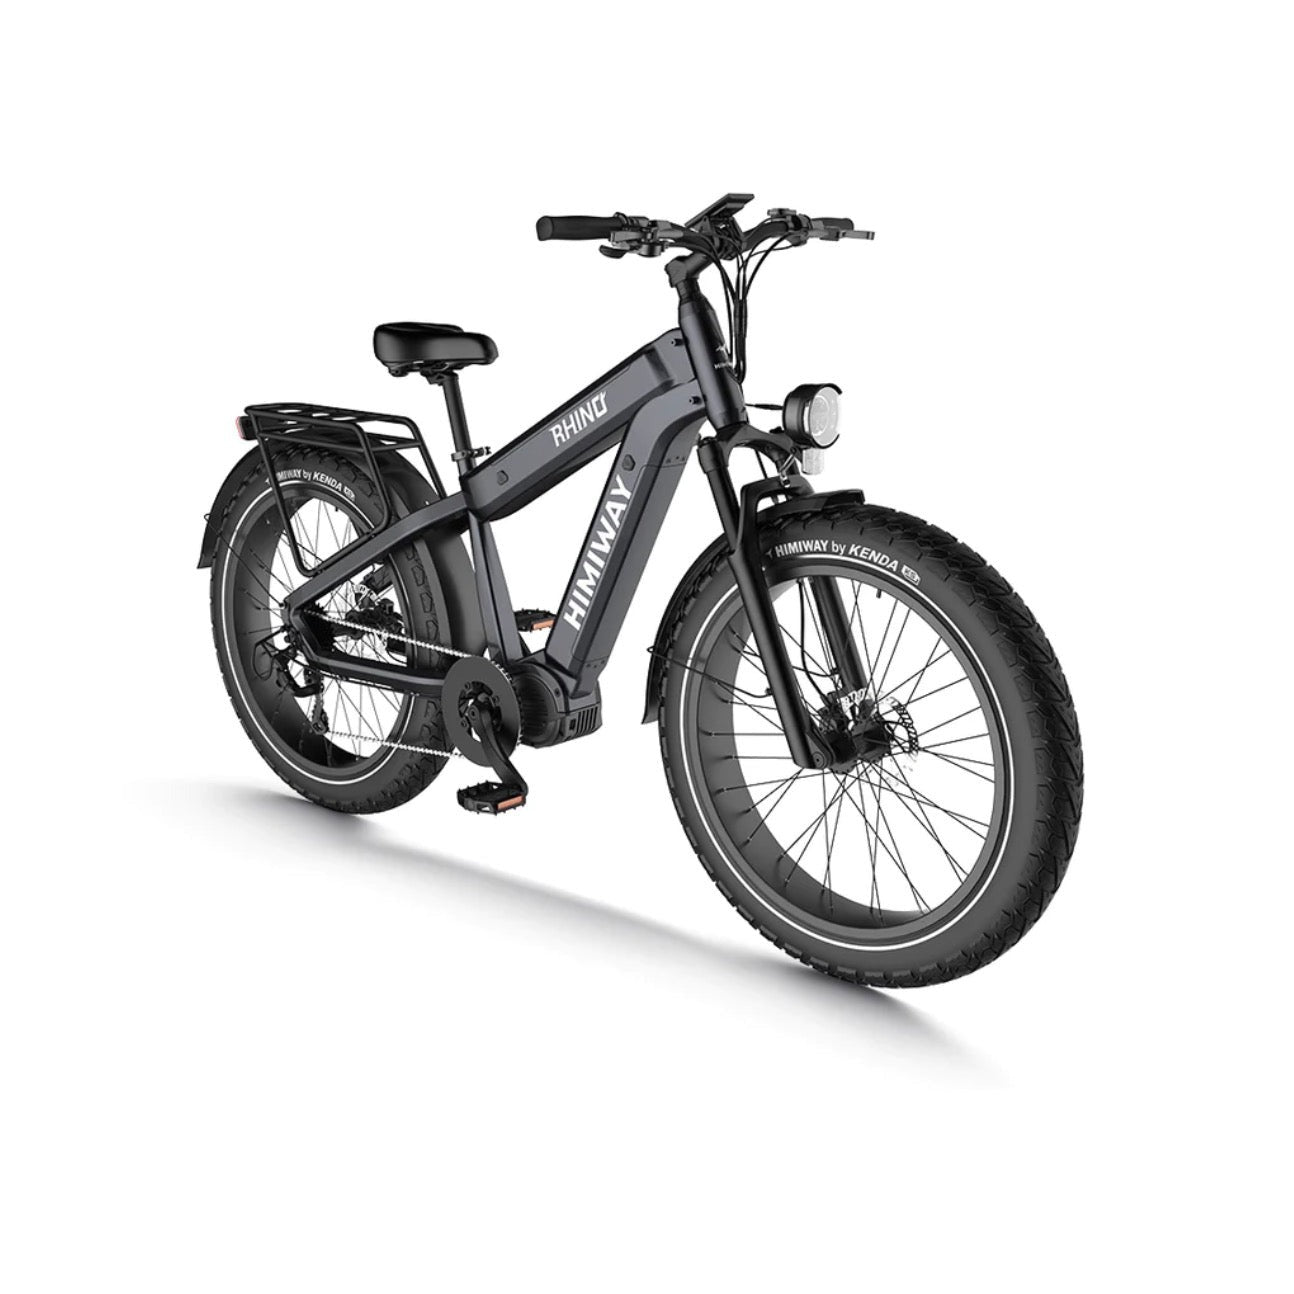 RHINO Dual Battery Electric Mountain Bike